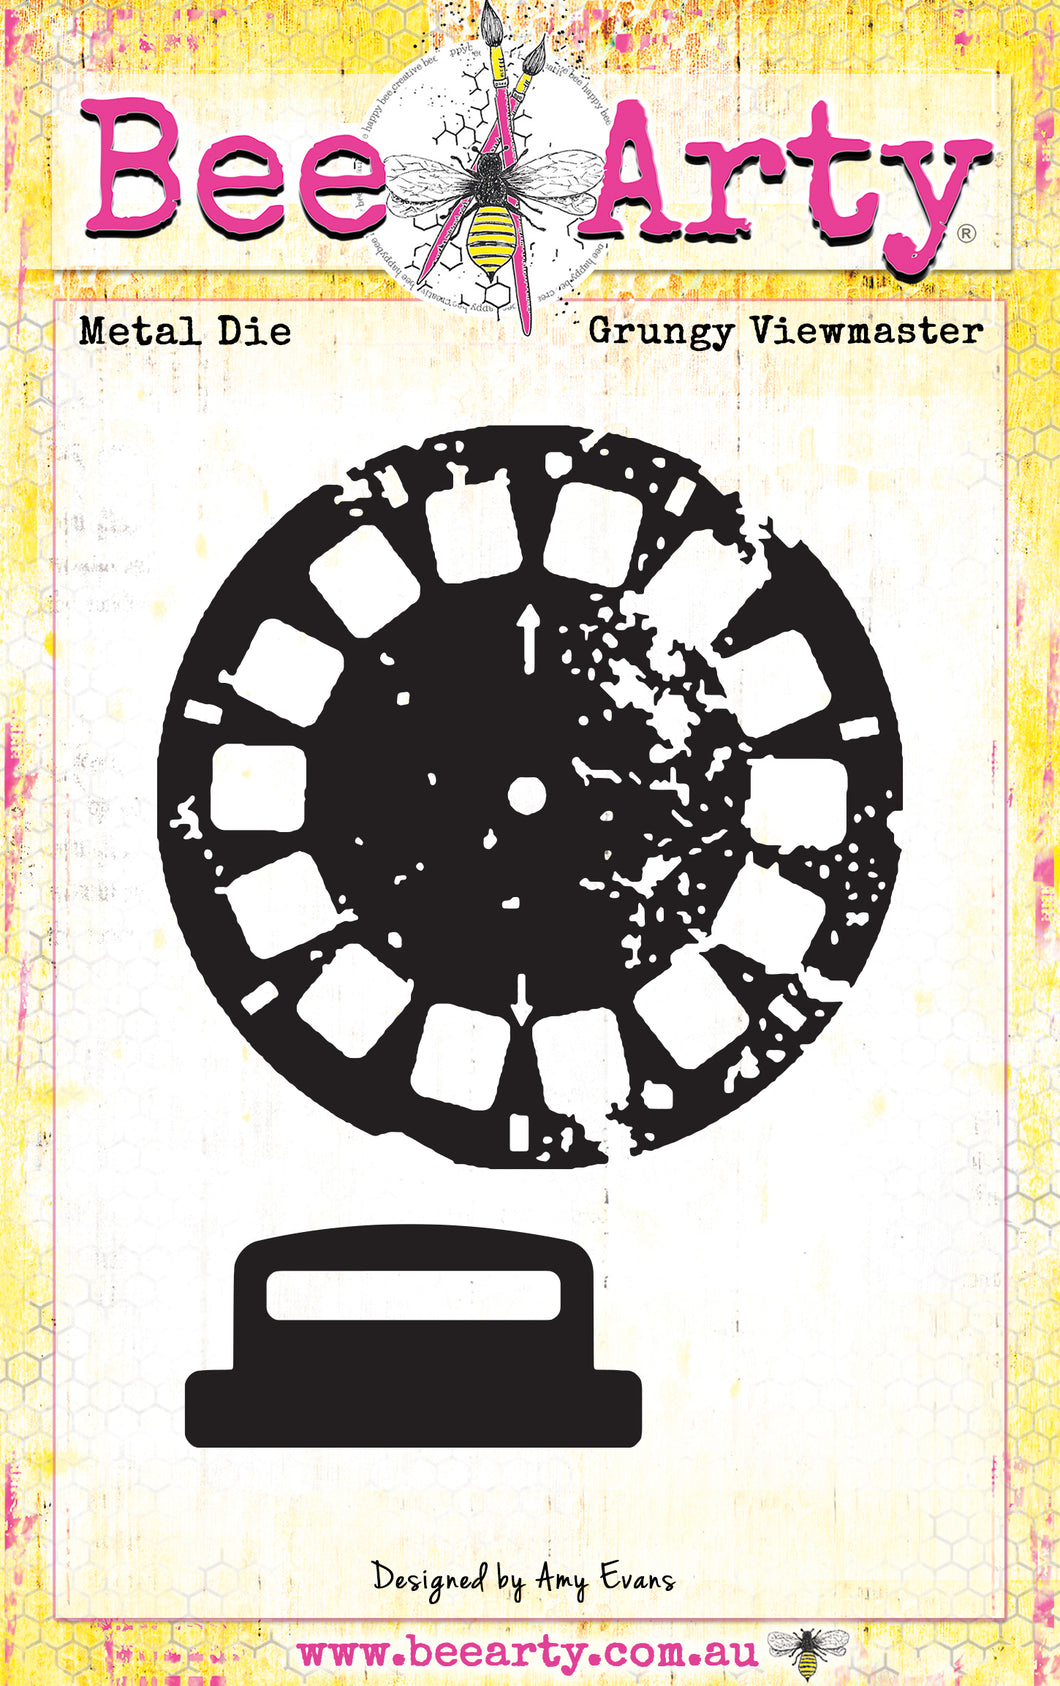 Grungy Viewmaster - Metal Die